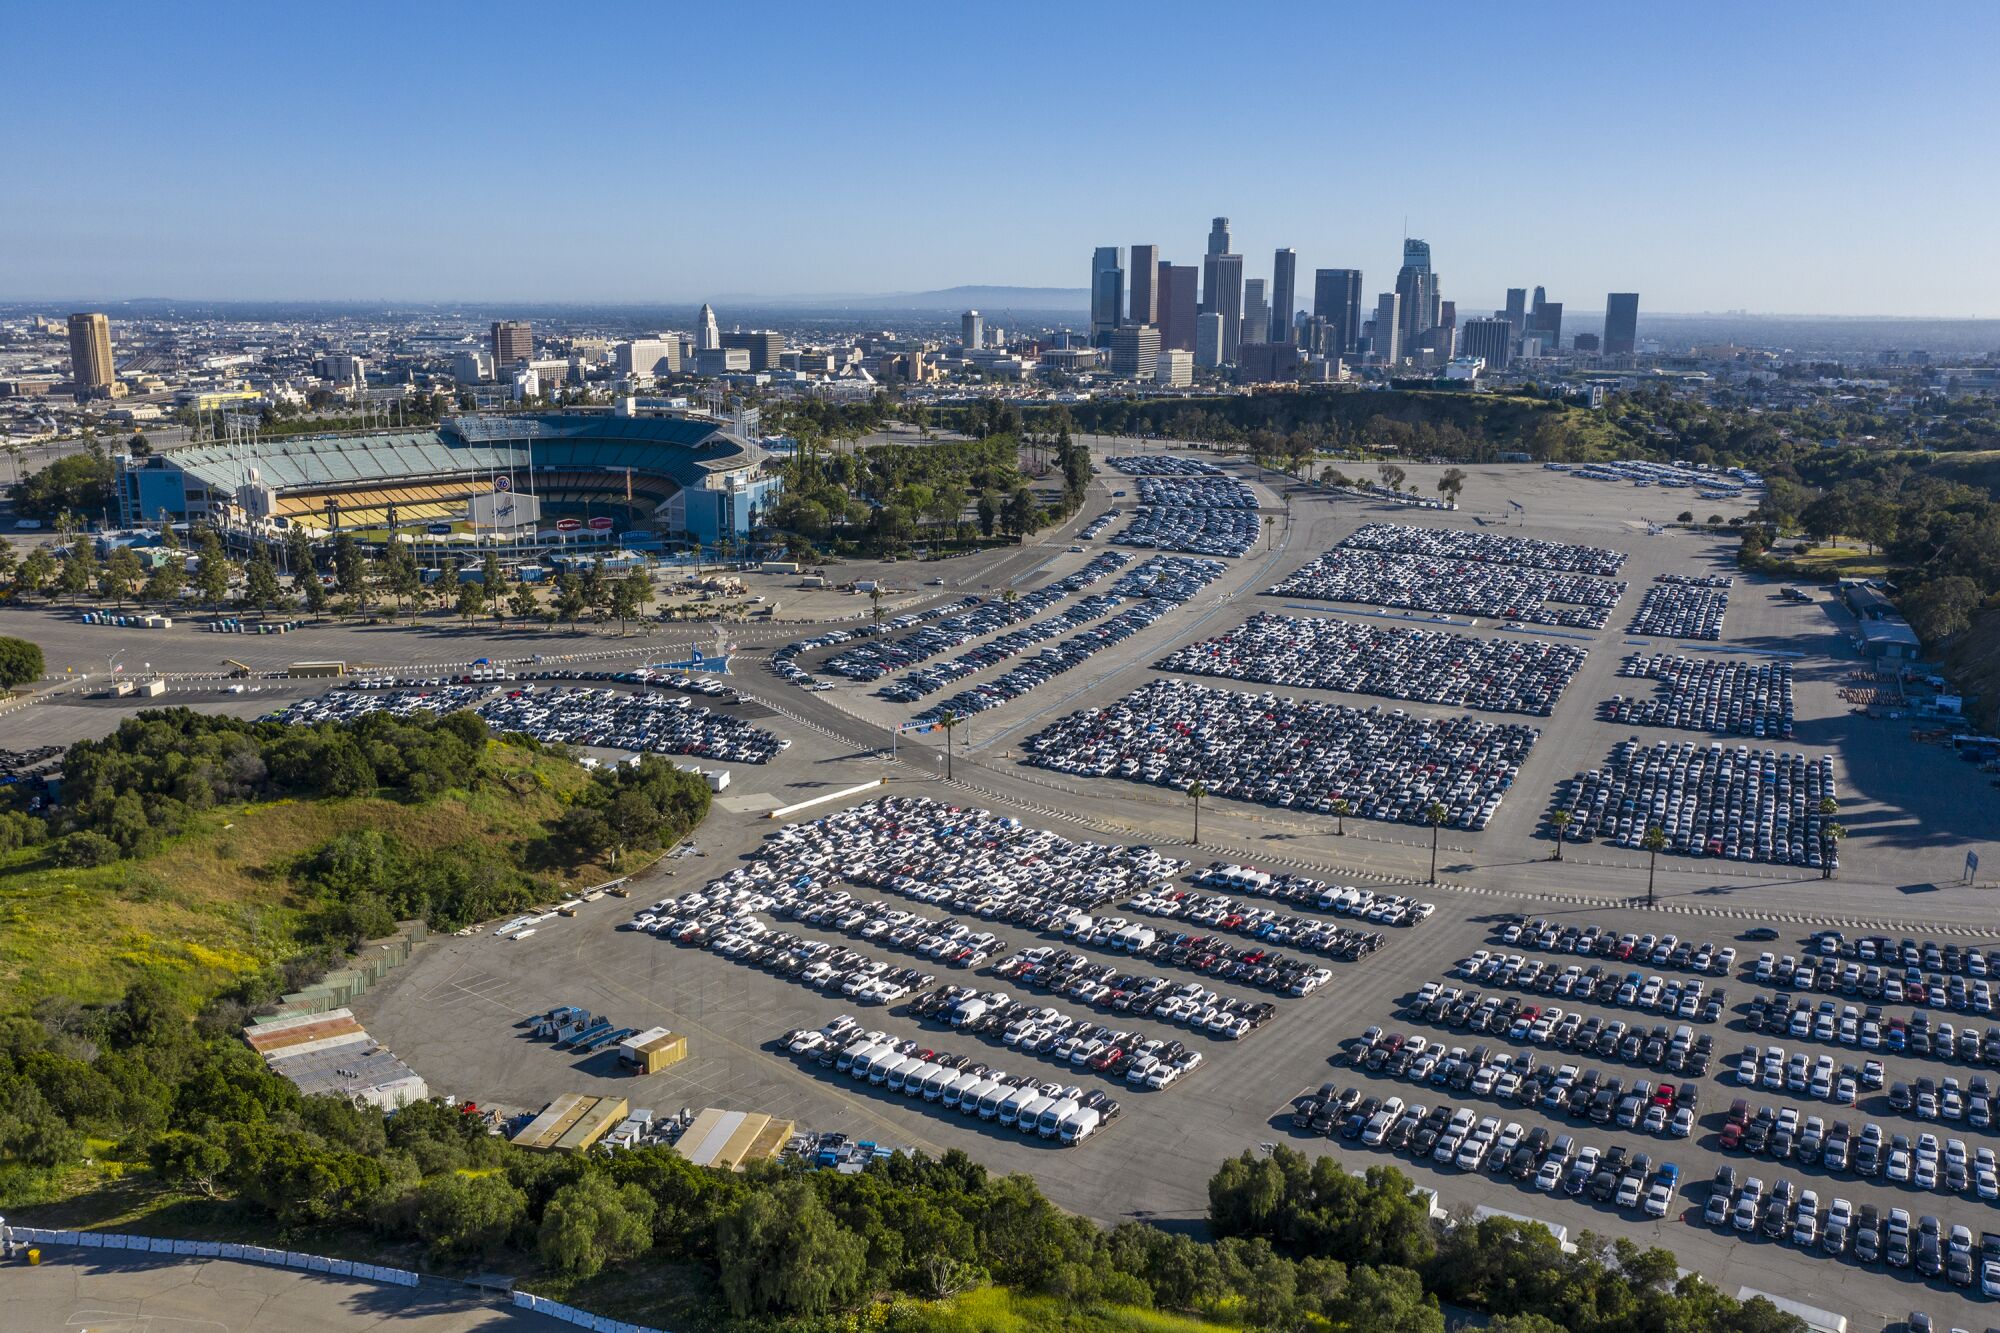 Thousands of rental cars at Dodger Stadium.